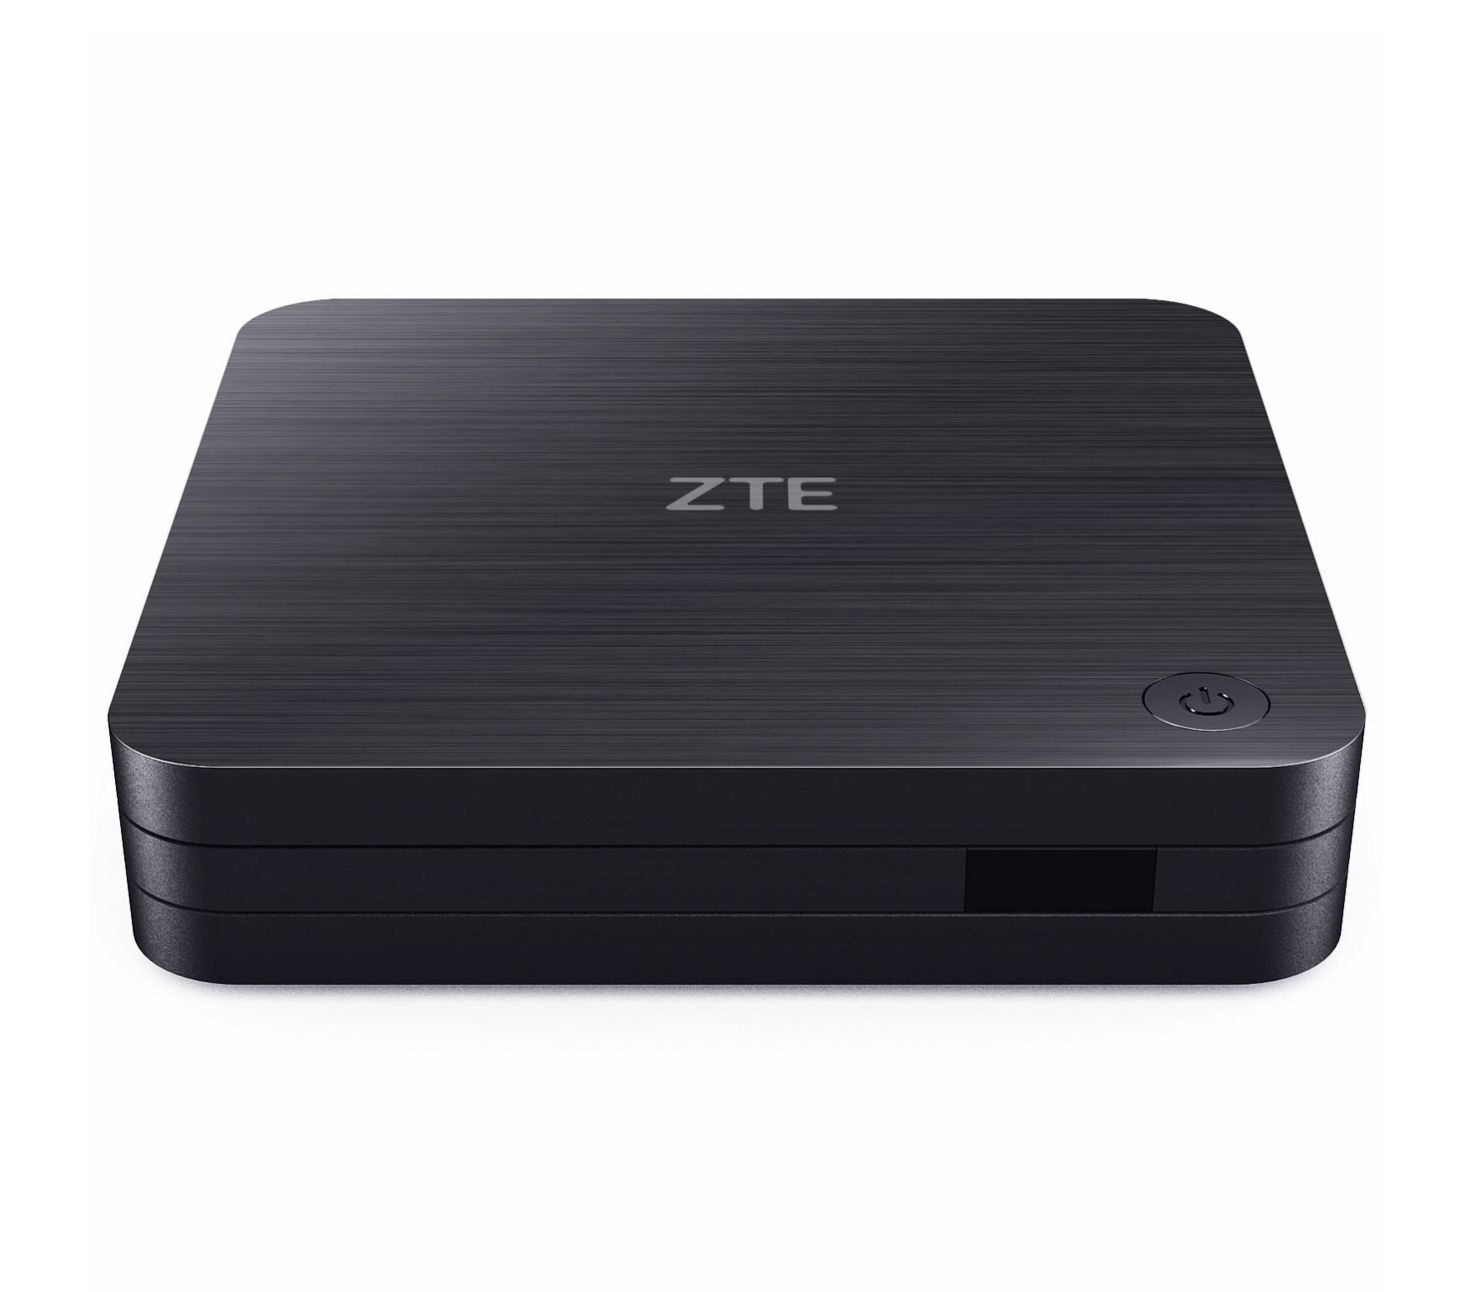 10b 8 2. ZTE zxv10 b866. Приставка МТС ZTE zxv10 b866. ZTE медиаплеер ZTE zxv10 b866. ZTE zxv10 b866 IPTV ТВ-приставка.